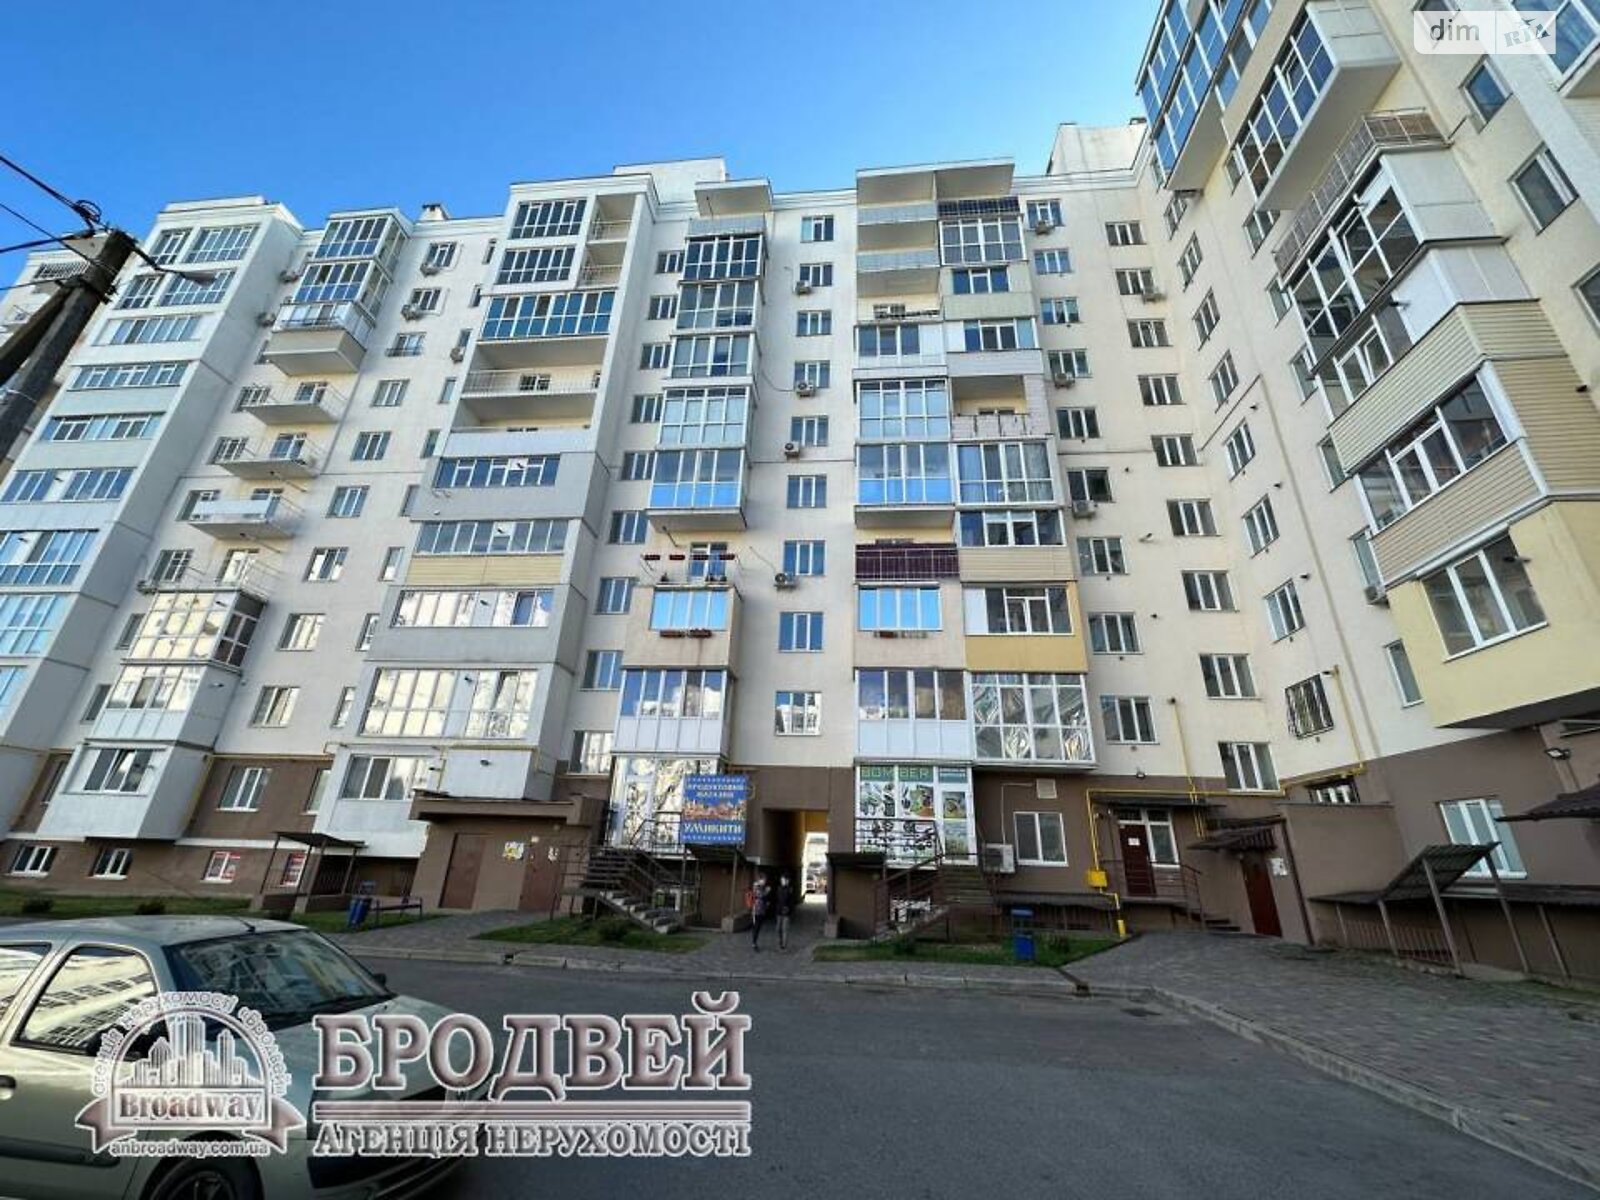 Продажа однокомнатной квартиры в Чернигове, на ул. Независимости 15, район Масаны фото 1